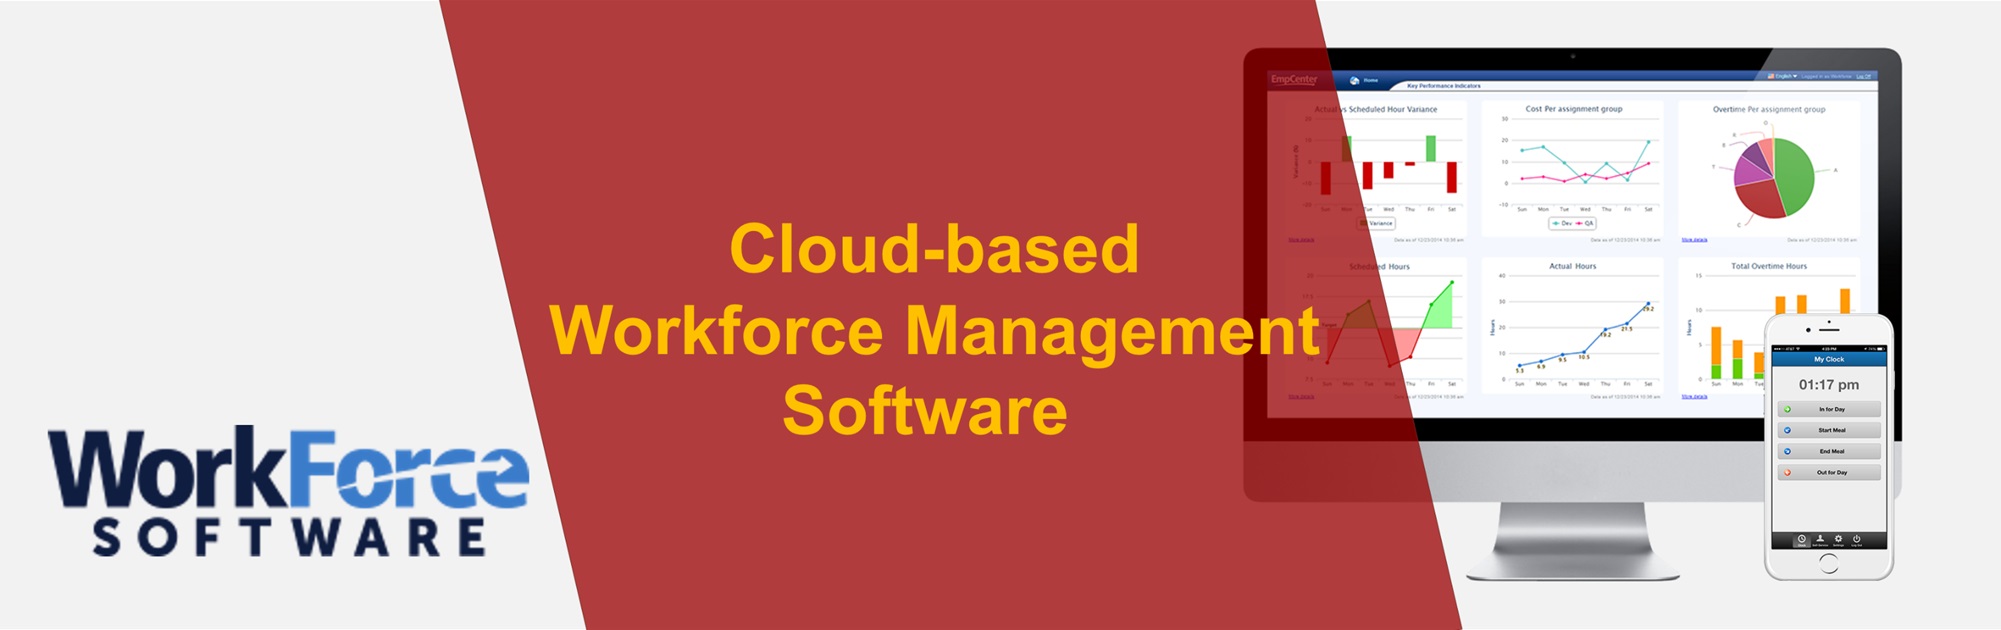 Cloud-Based_Workforce_Management_Software